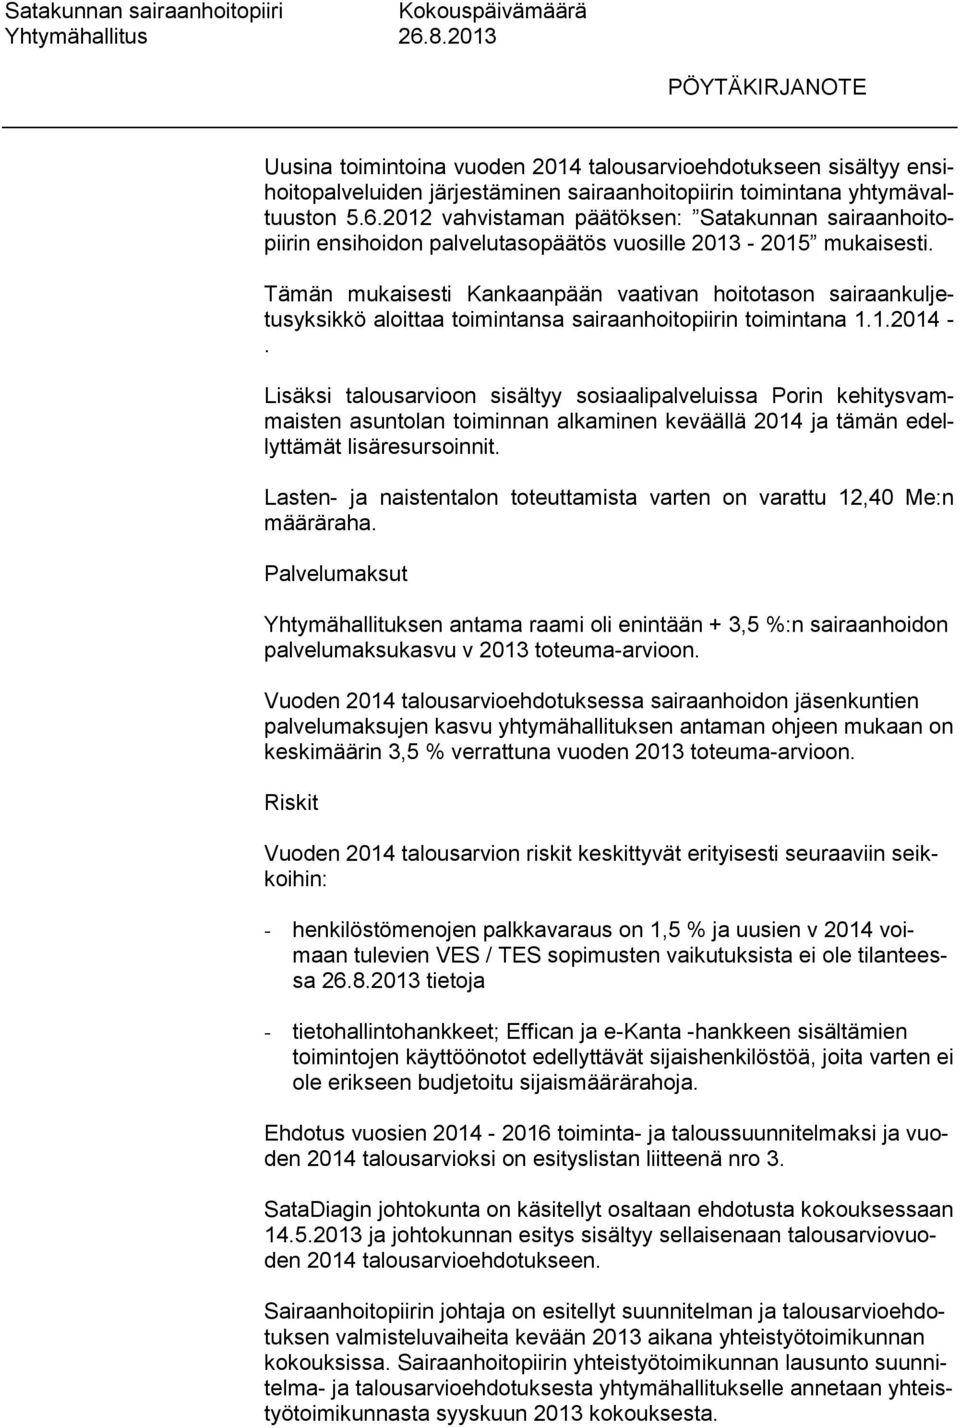 Tämän mukaisesti Kankaanpään vaativan hoitotason sairaankuljetusyksikkö aloittaa toimintansa sairaanhoitopiirin toimintana 1.1.2014 -.